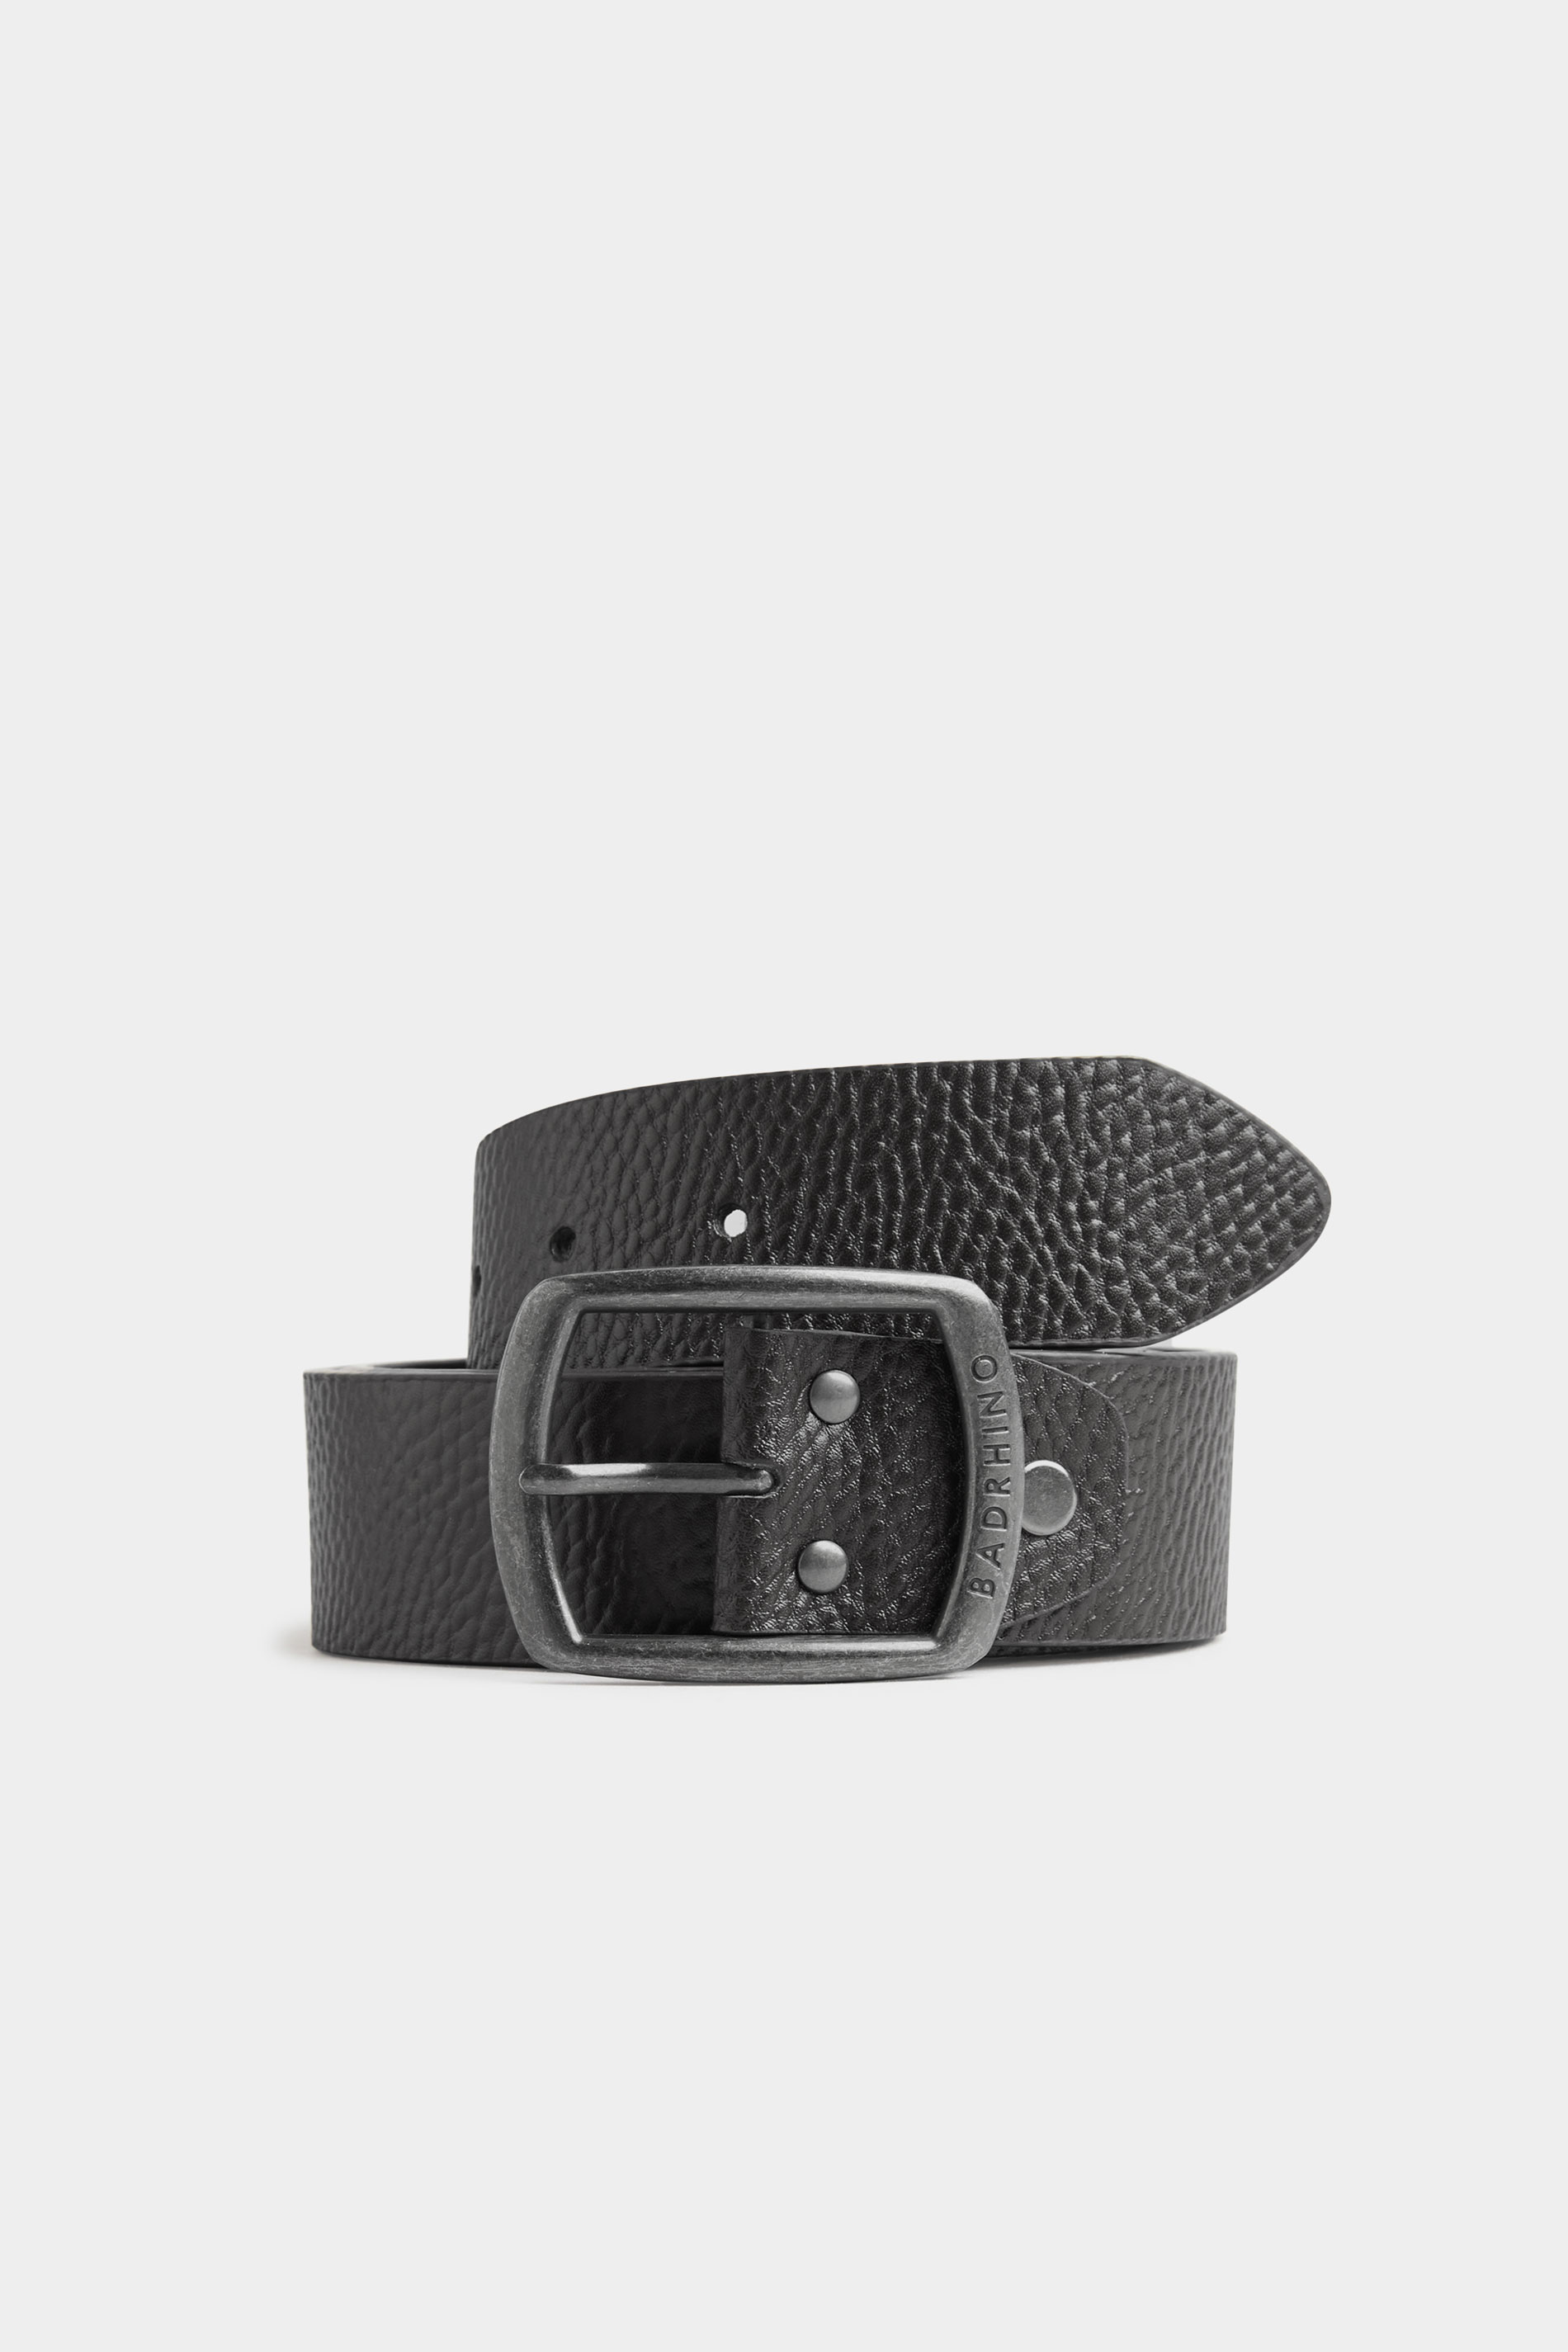 BadRhino Black Leather Belt_A.jpg